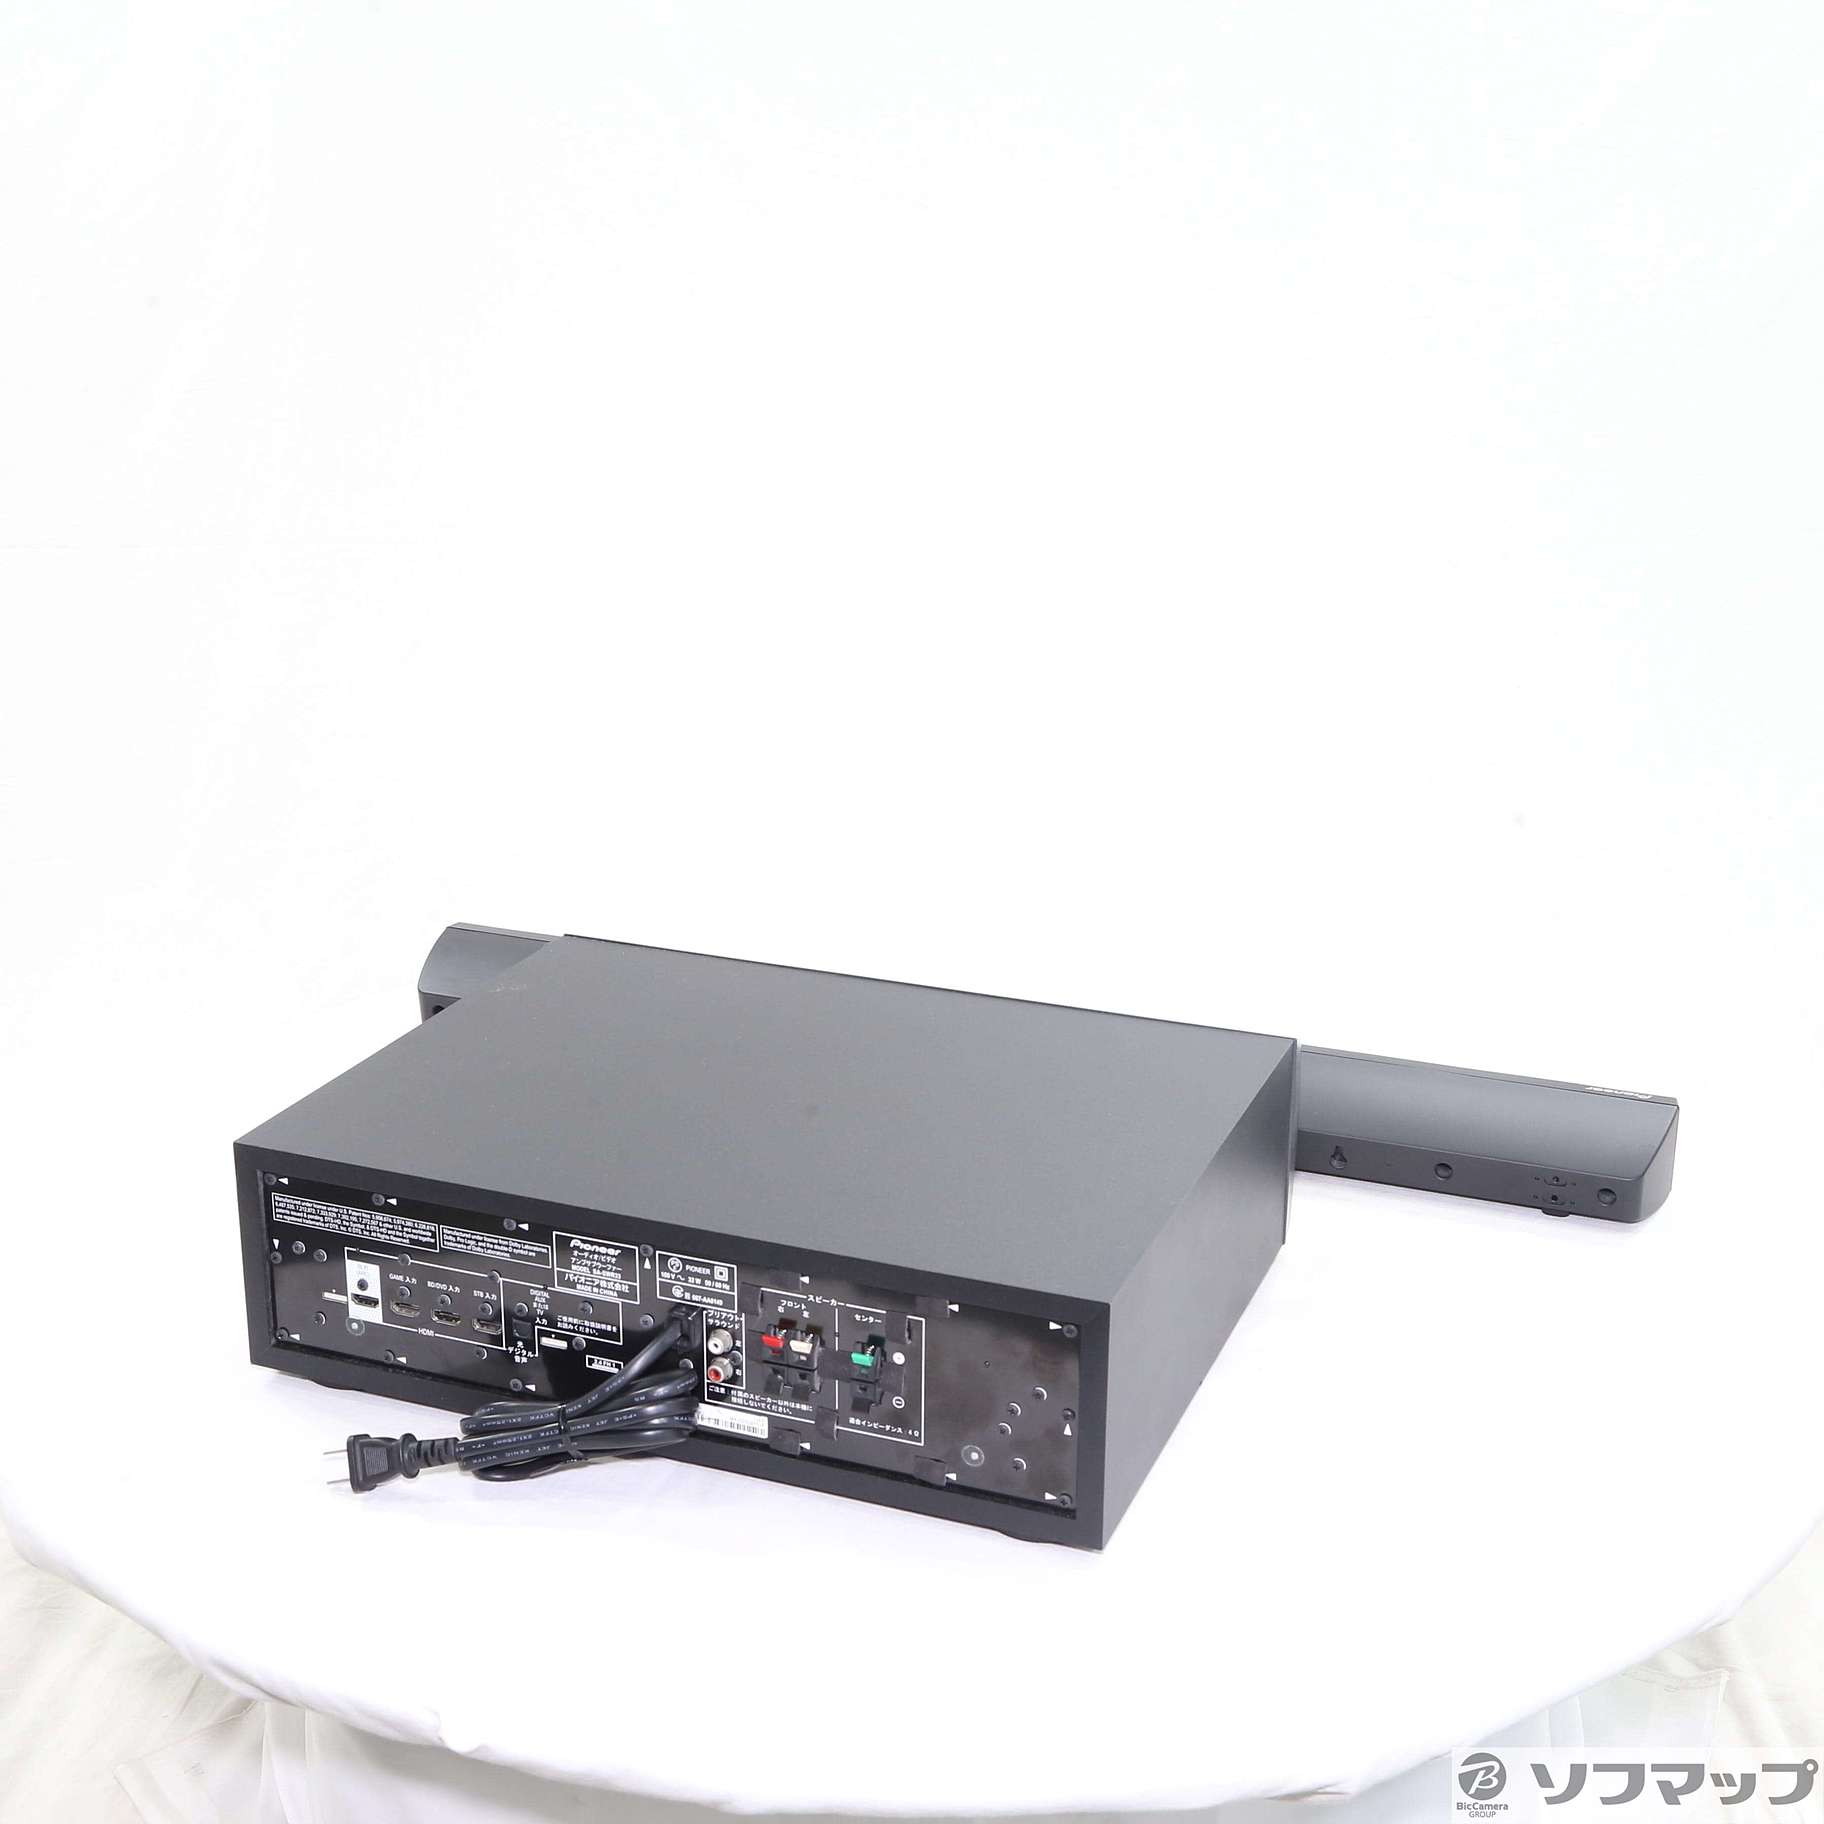 パイオニアHTP-SB550  サウンドバーシステム　スピーカー